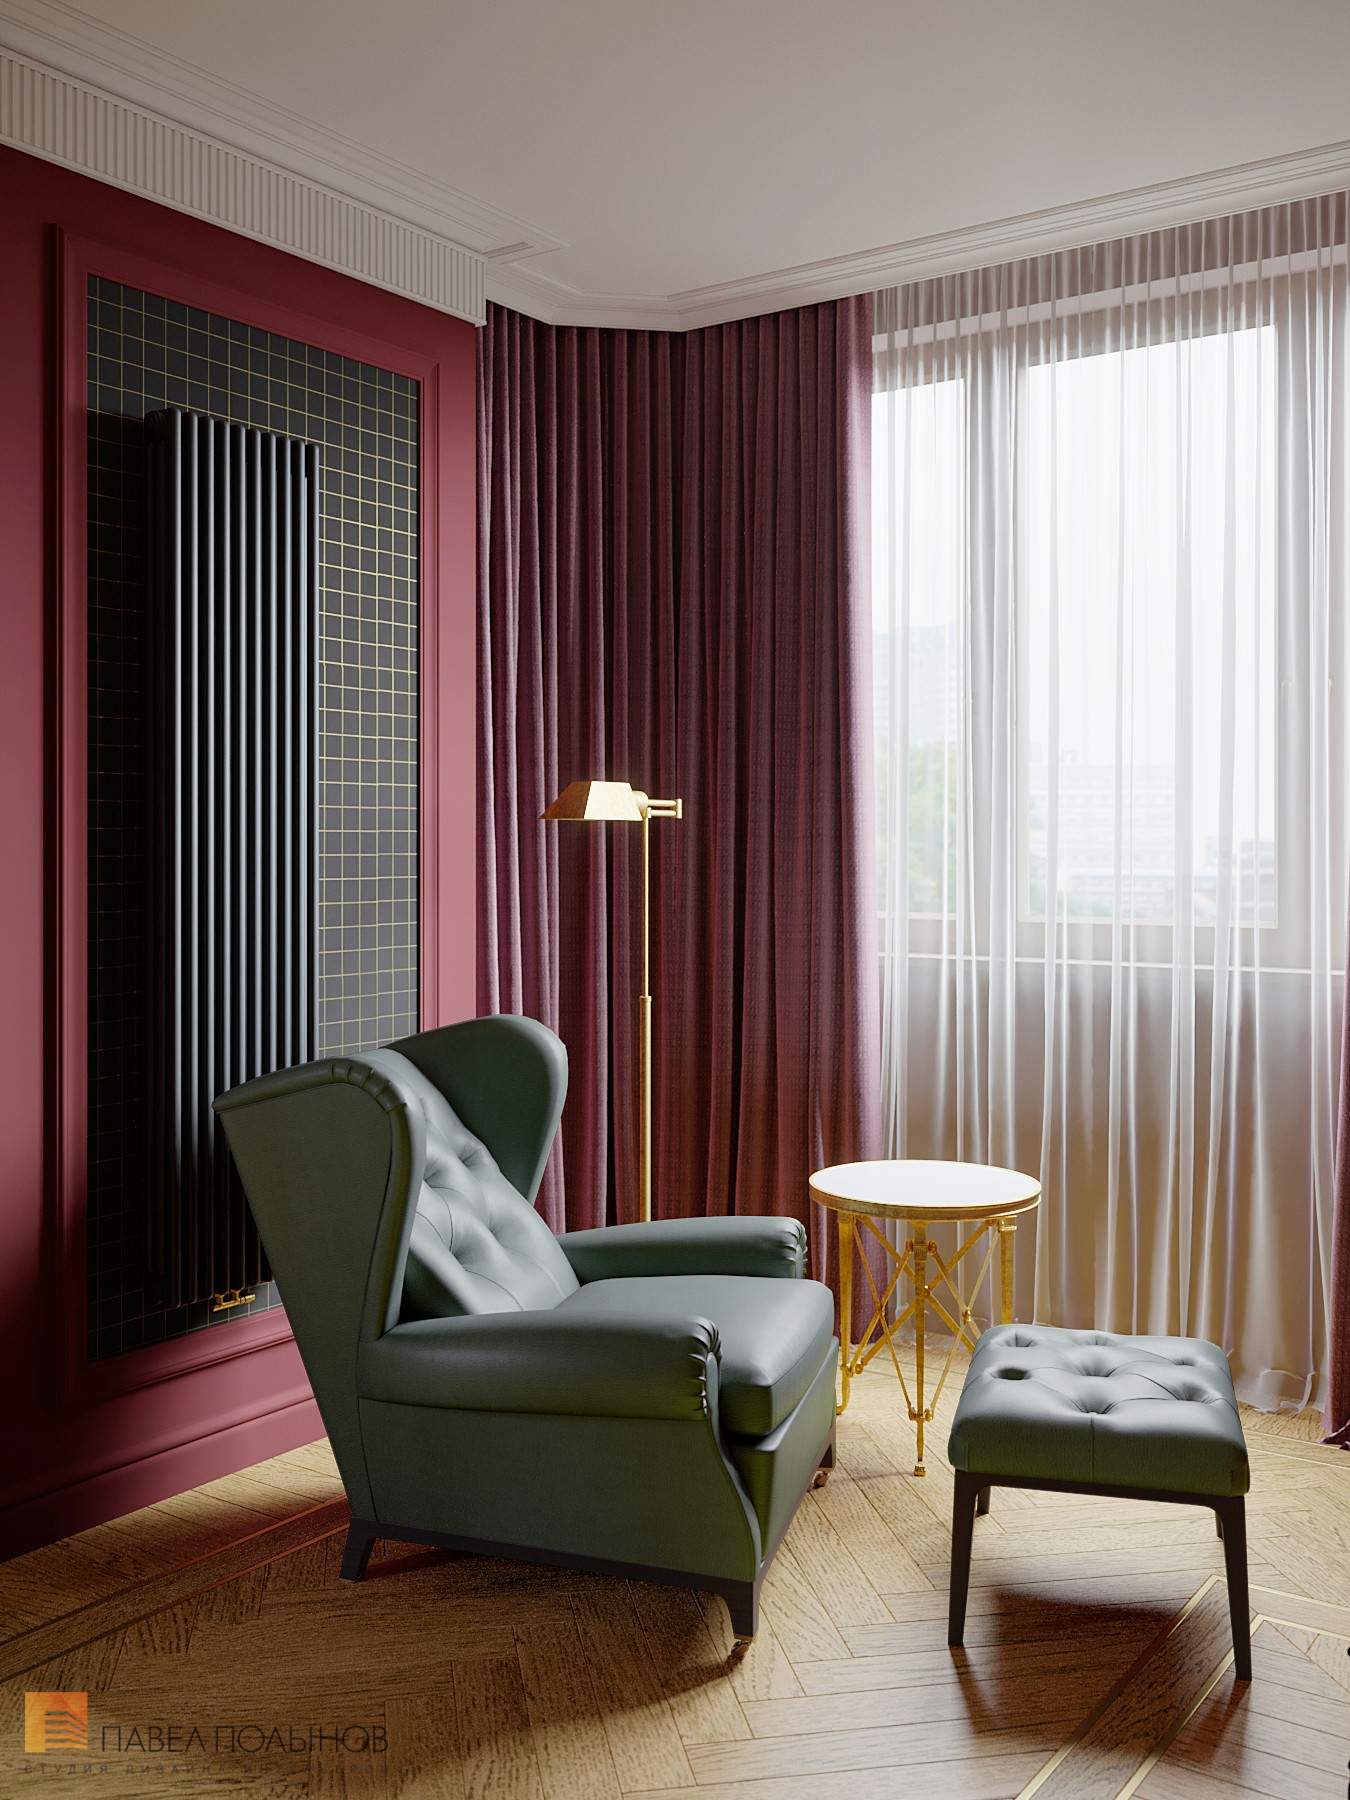 Фото дизайн спальни из проекта «Интерьер квартиры в стиле английской классики, ЖК «Патриот», 124 кв.м.»